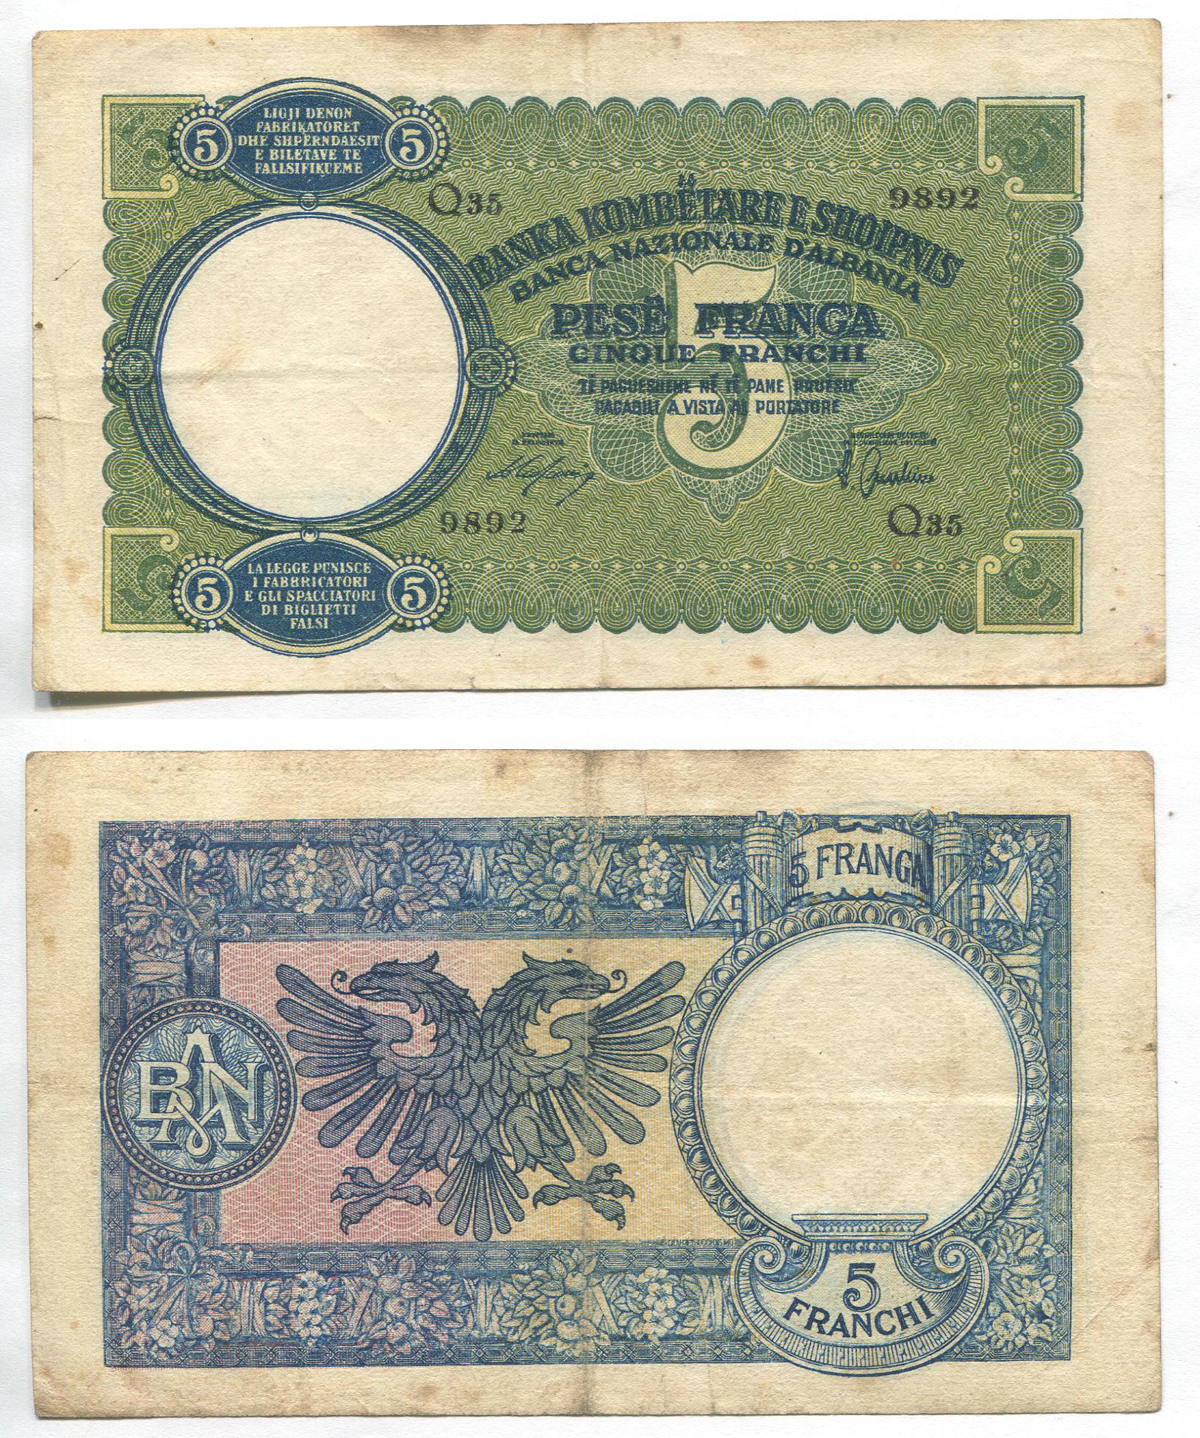 Албания. 5 франга. 1939 г. Pick №6. # Q35 9892